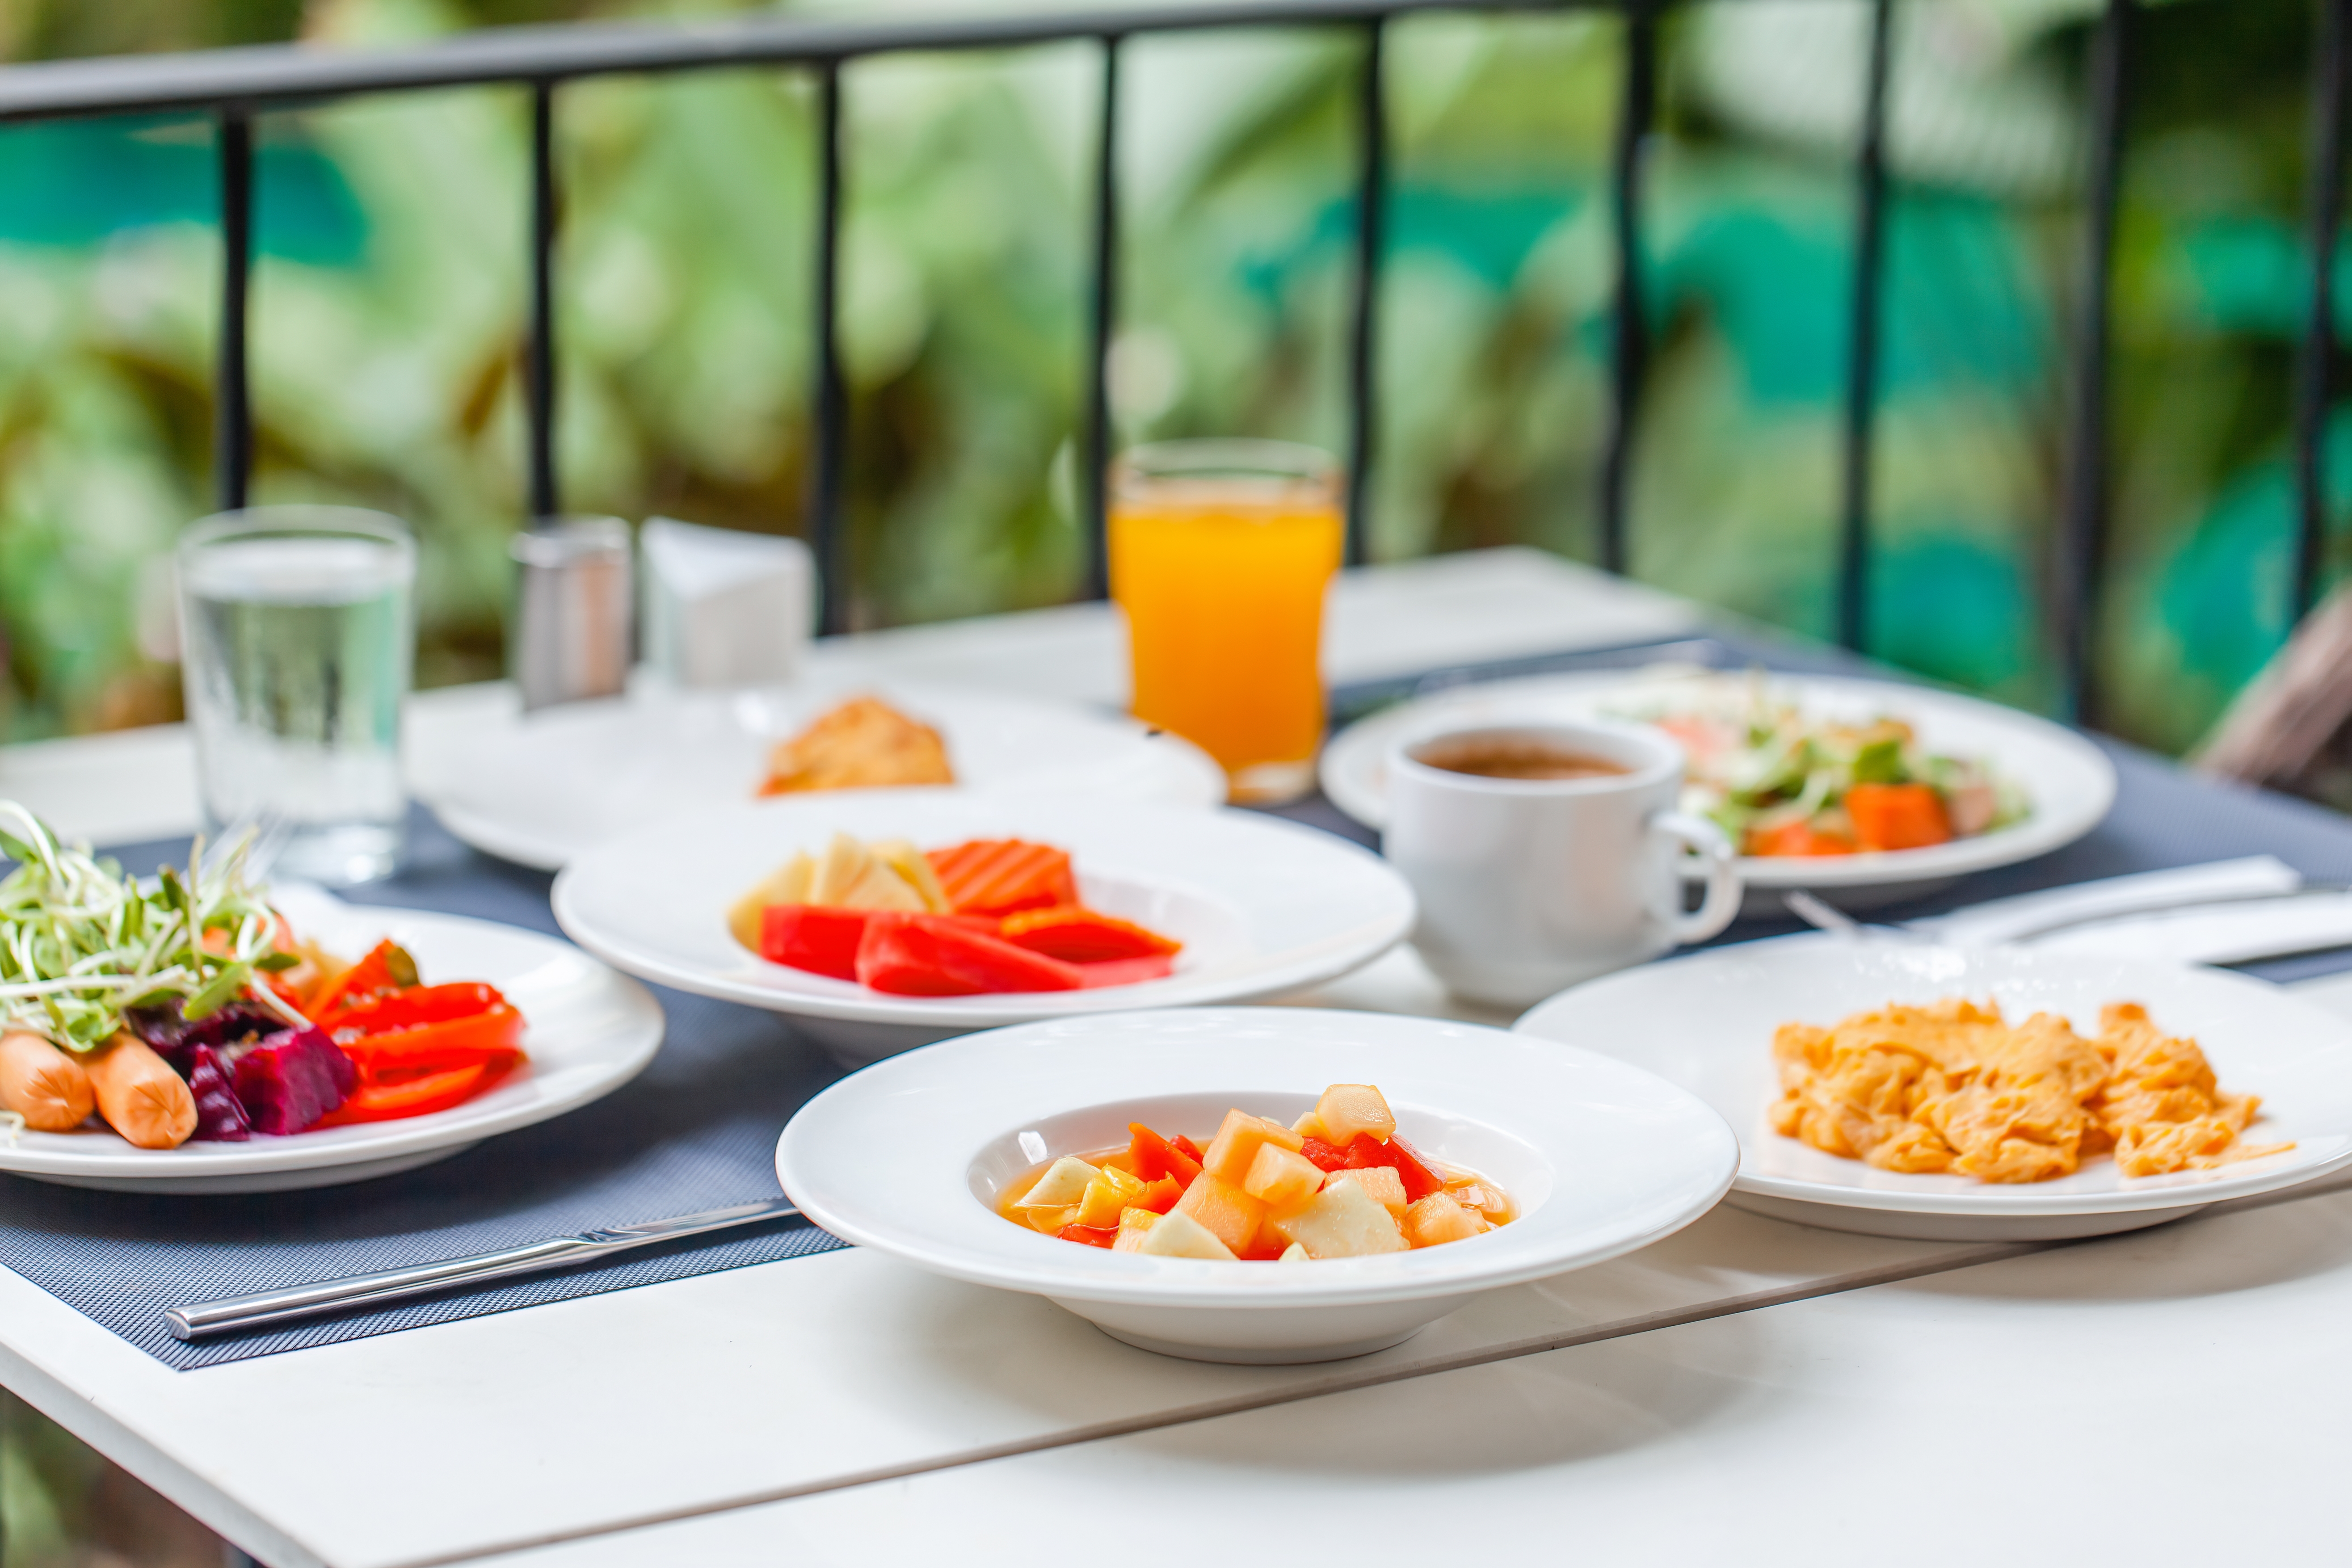 Unberührter tropischer Frühstücksaufstrich | Quelle: Shutterstock